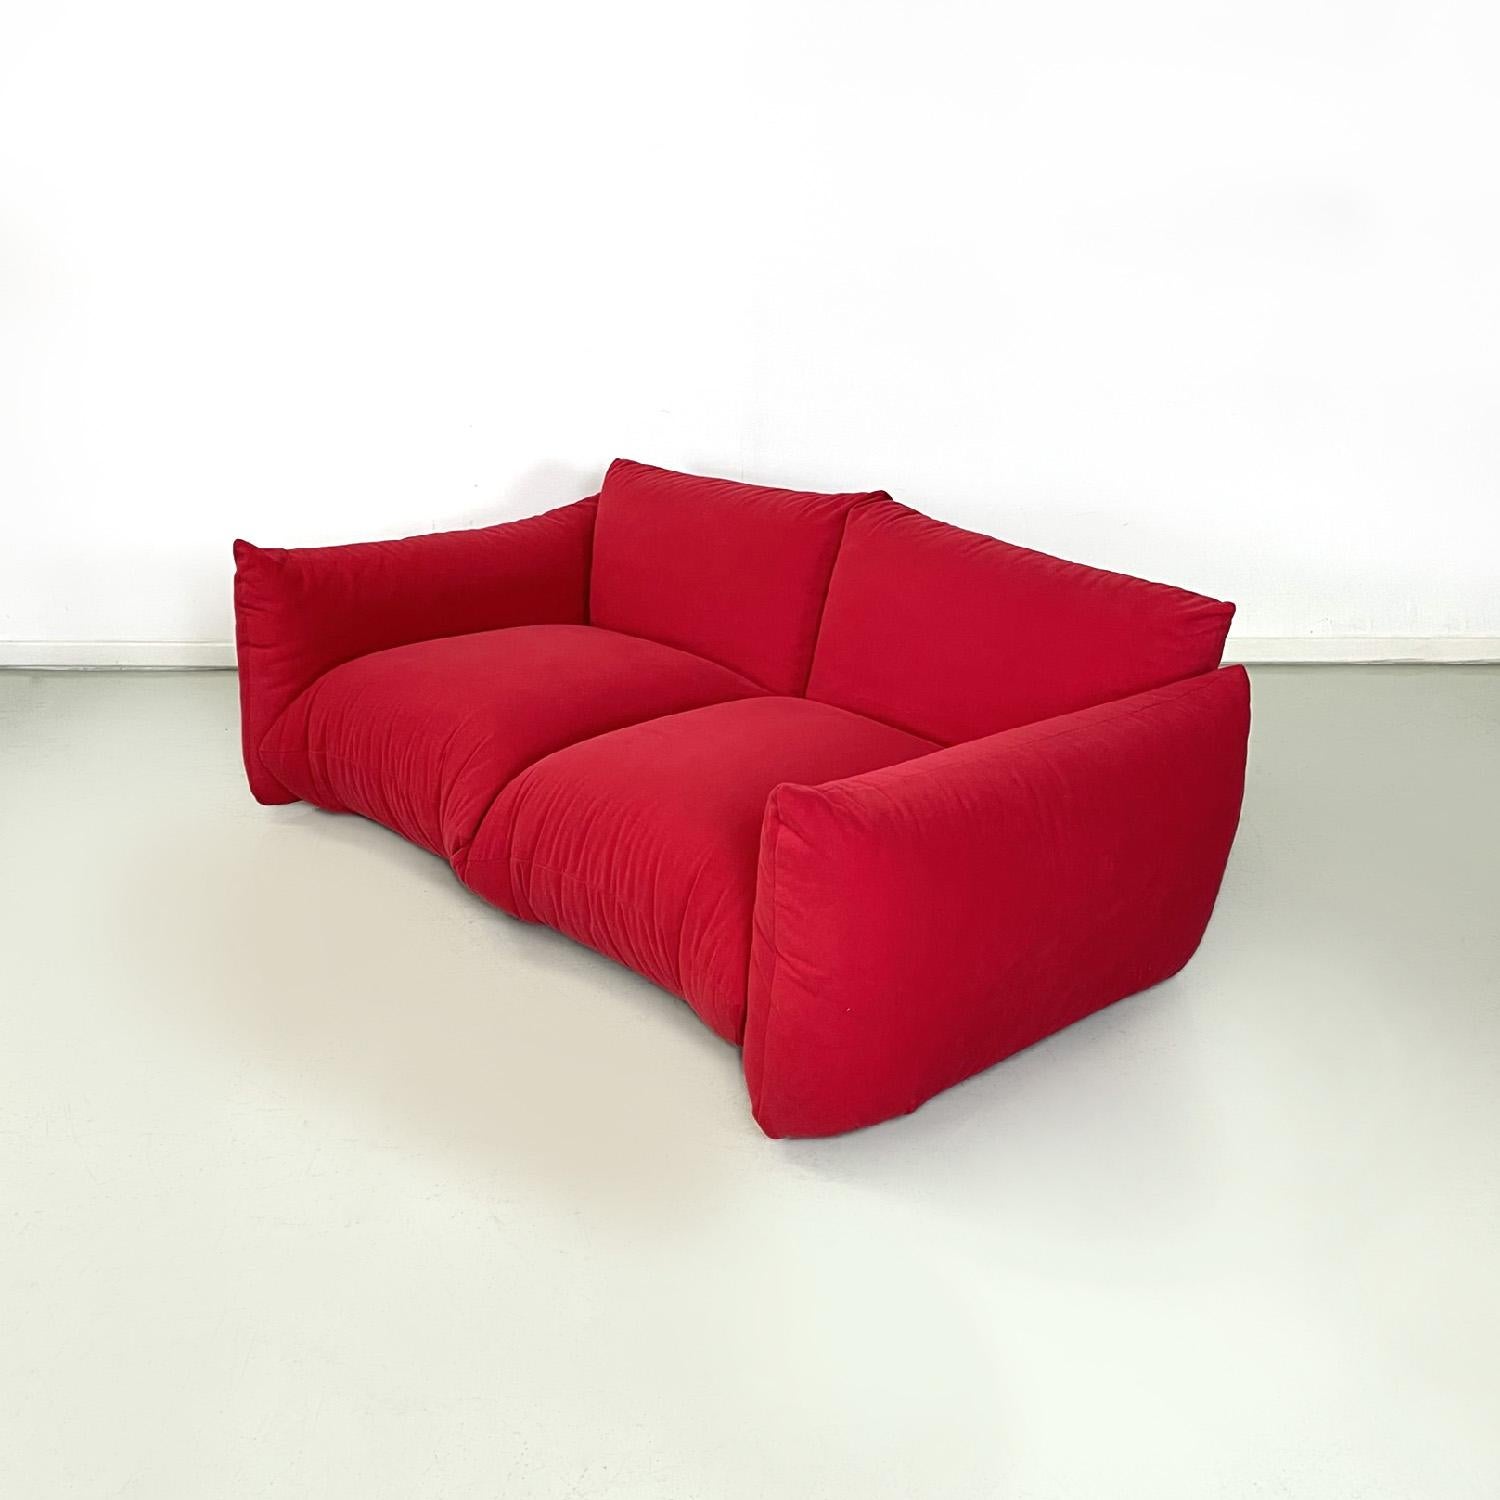 Canapé rouge moderne italien Marenco de Mario Marenco pour Arflex, 1970
Canapé rouge mod. Marenco. L'assise rectangulaire du canapé est composée de deux coussins rembourrés recouverts d'un tissu rouge de type alcantara, tout comme le dossier. Les